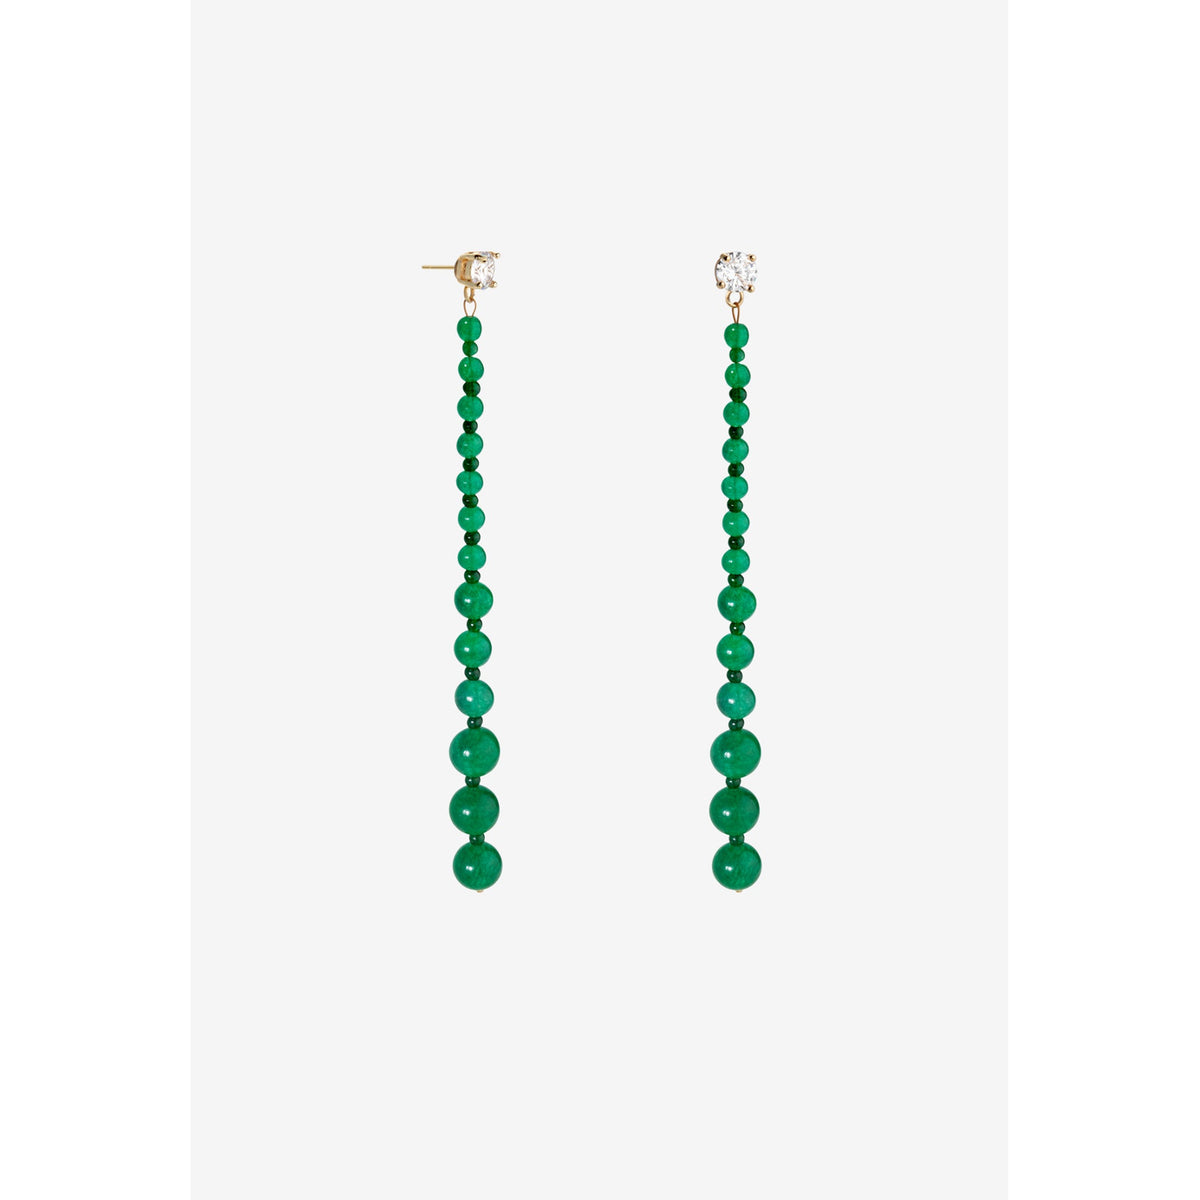 Shashi Jewelry Miami Vice Drop Earring in Emerald